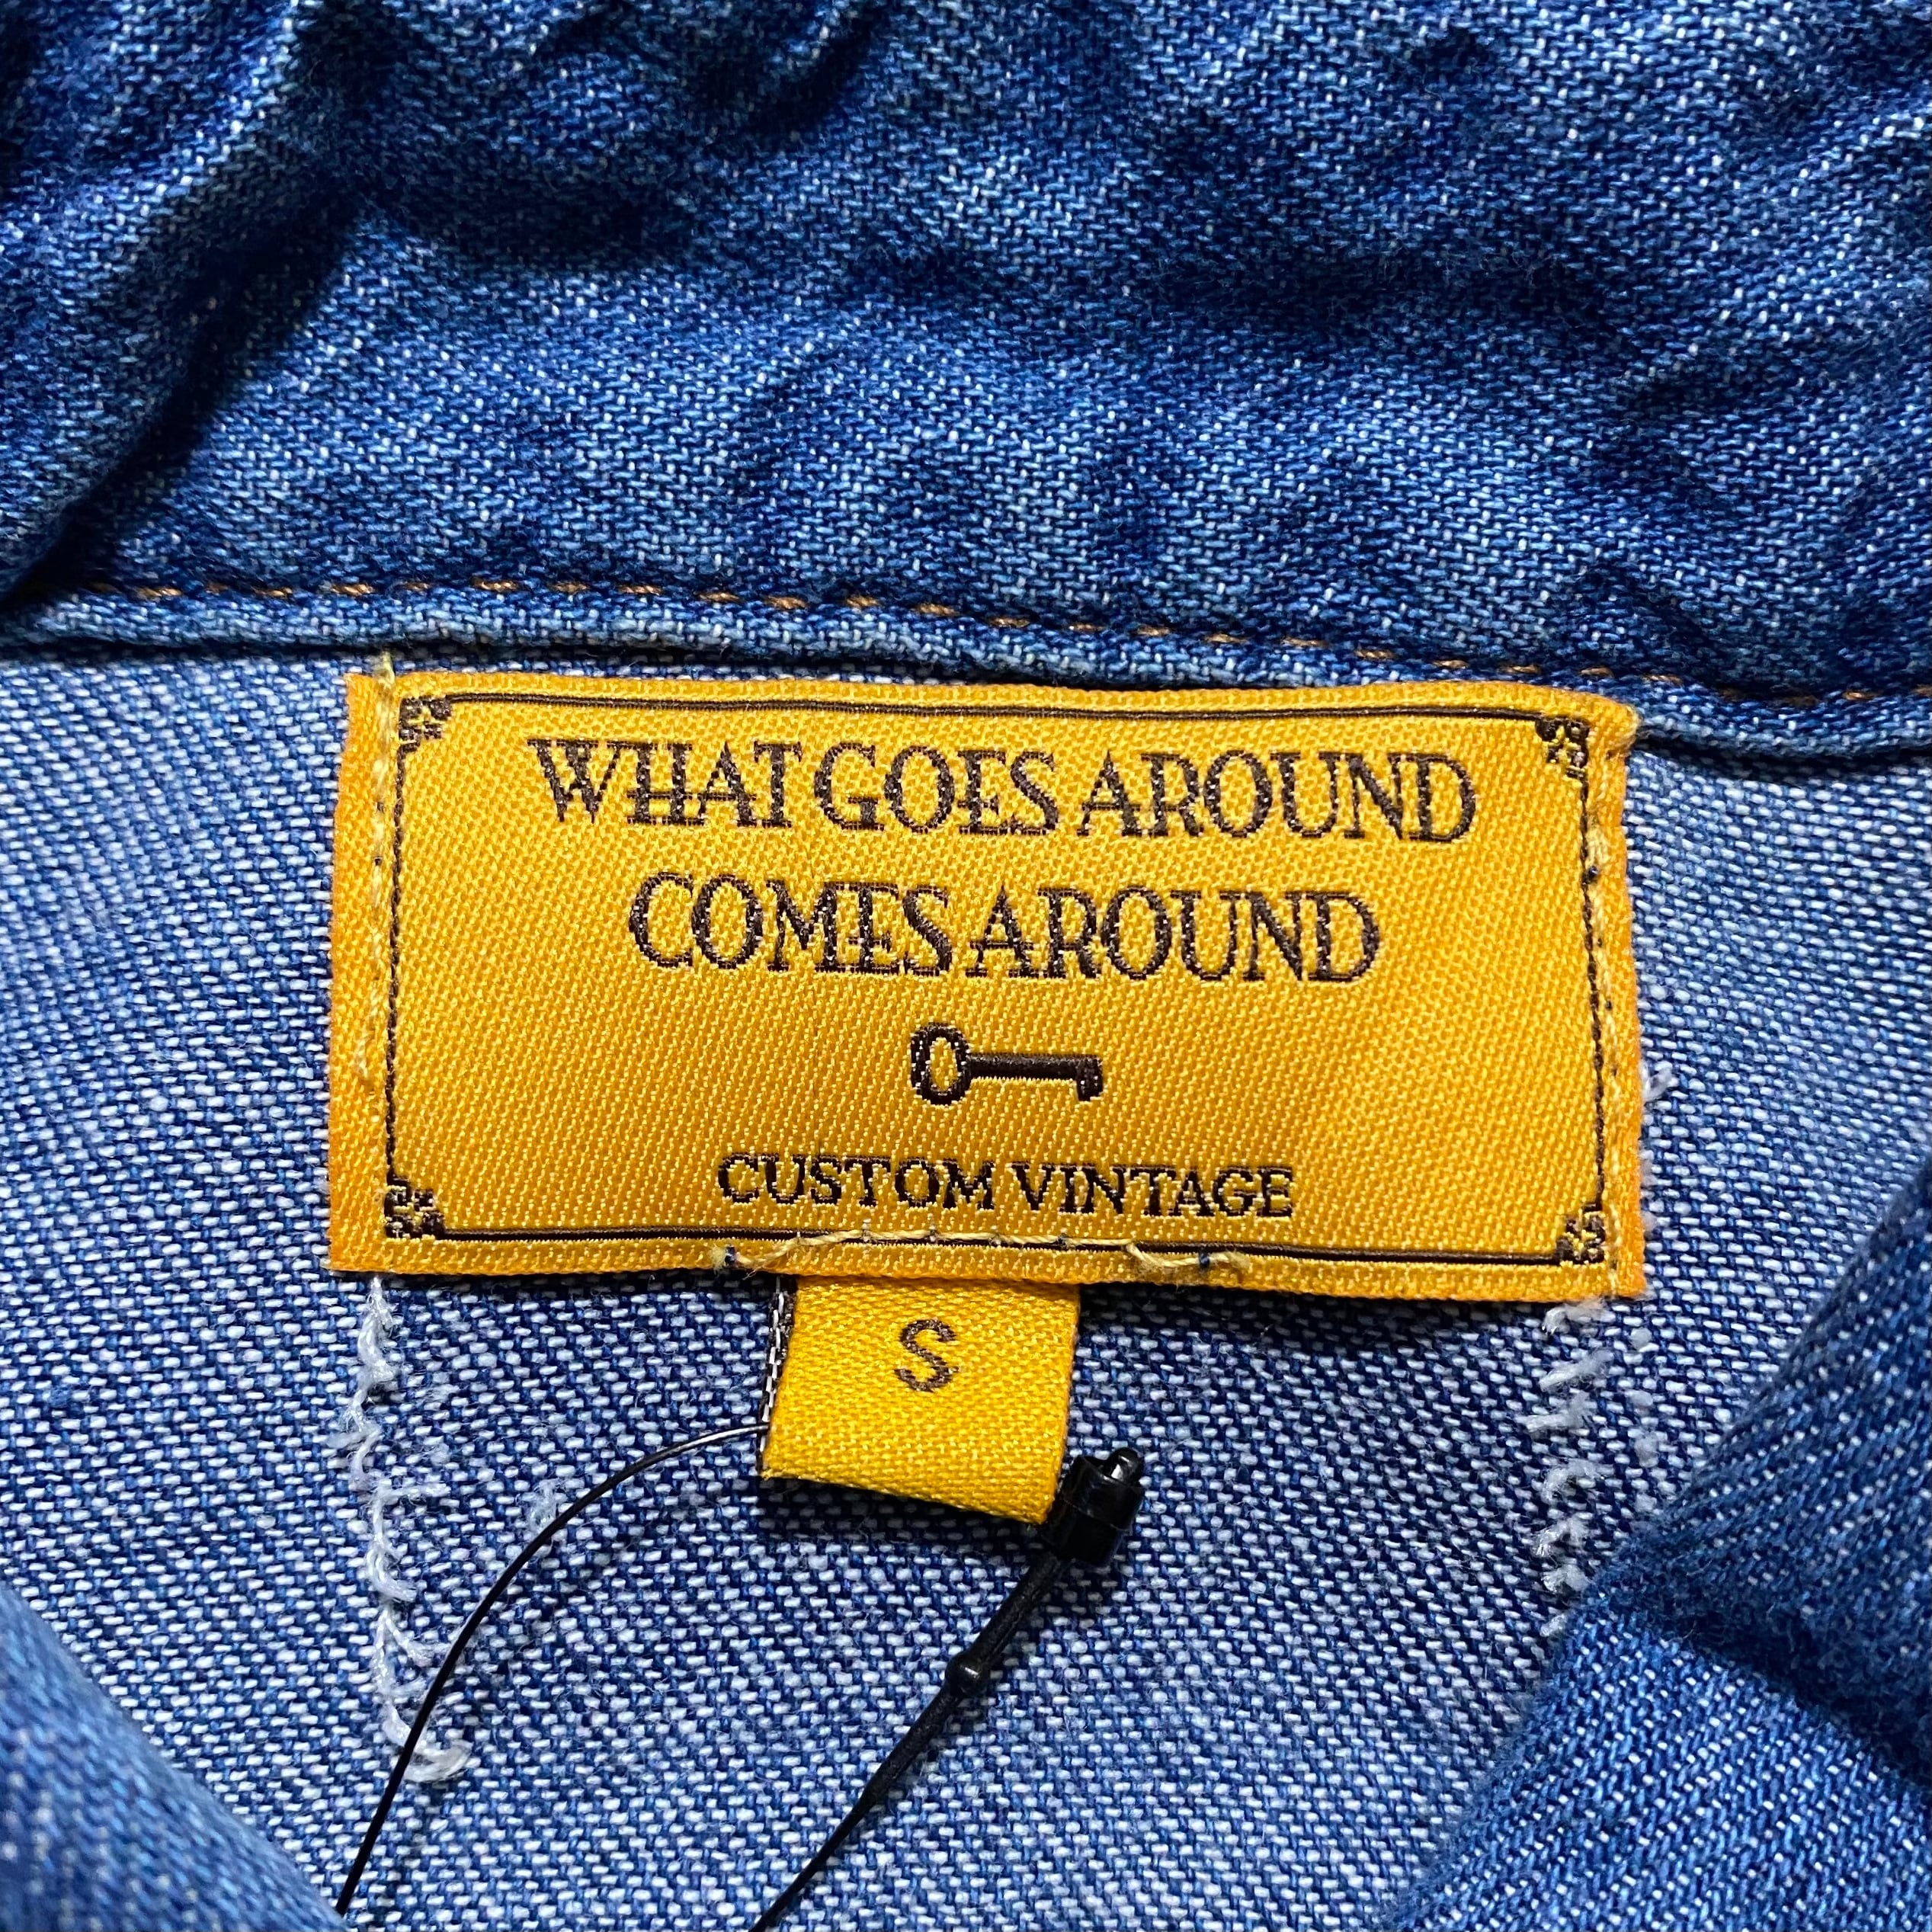 WHAT GOES AROUND COMES AROUND “wrangler” remake denim shirt NOIR ONLINE